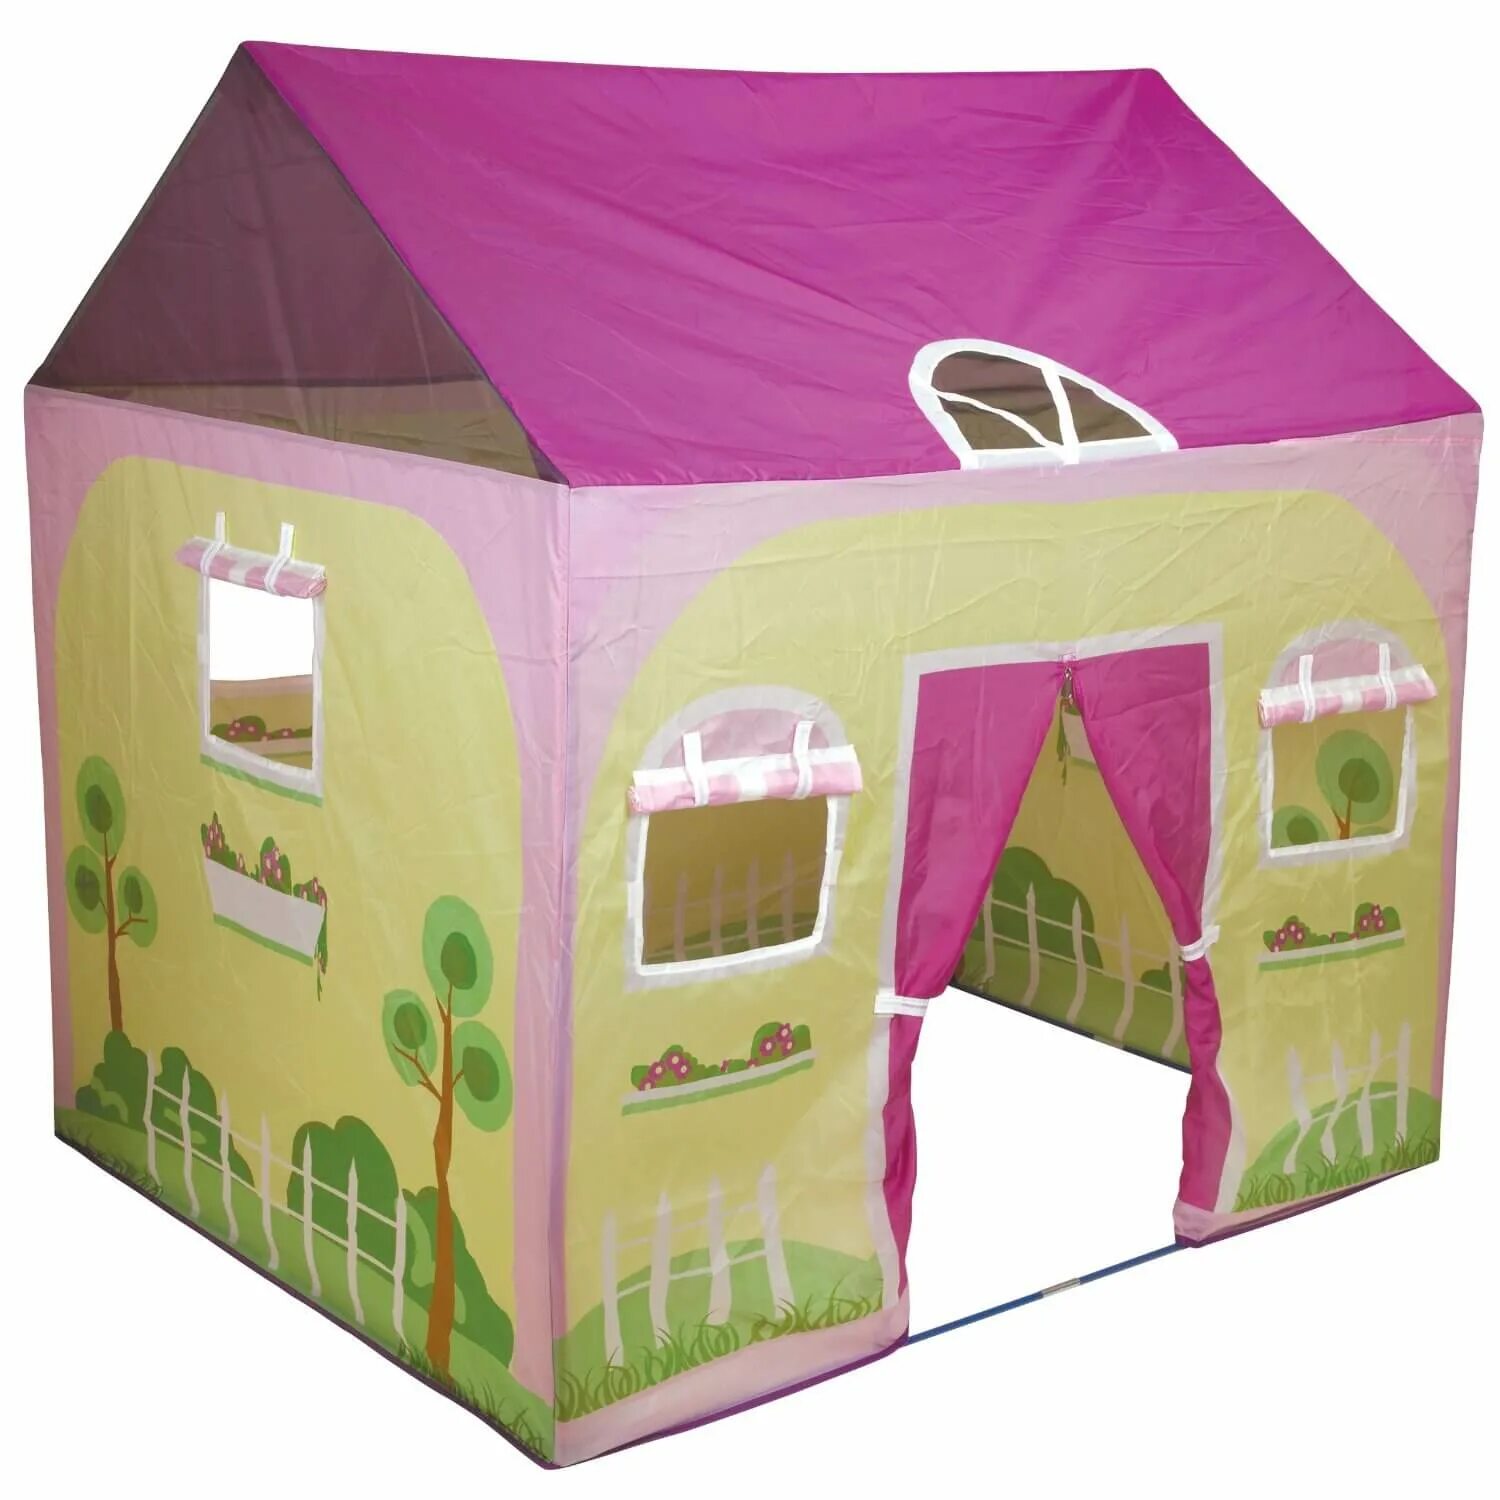 Палатка дом купить. Детская палатка-домик my little House. Детская игровая палатка Ice Cream House Tent 3+. Play Tent палатка детская. Палатка домик Intex джунгли 45642.